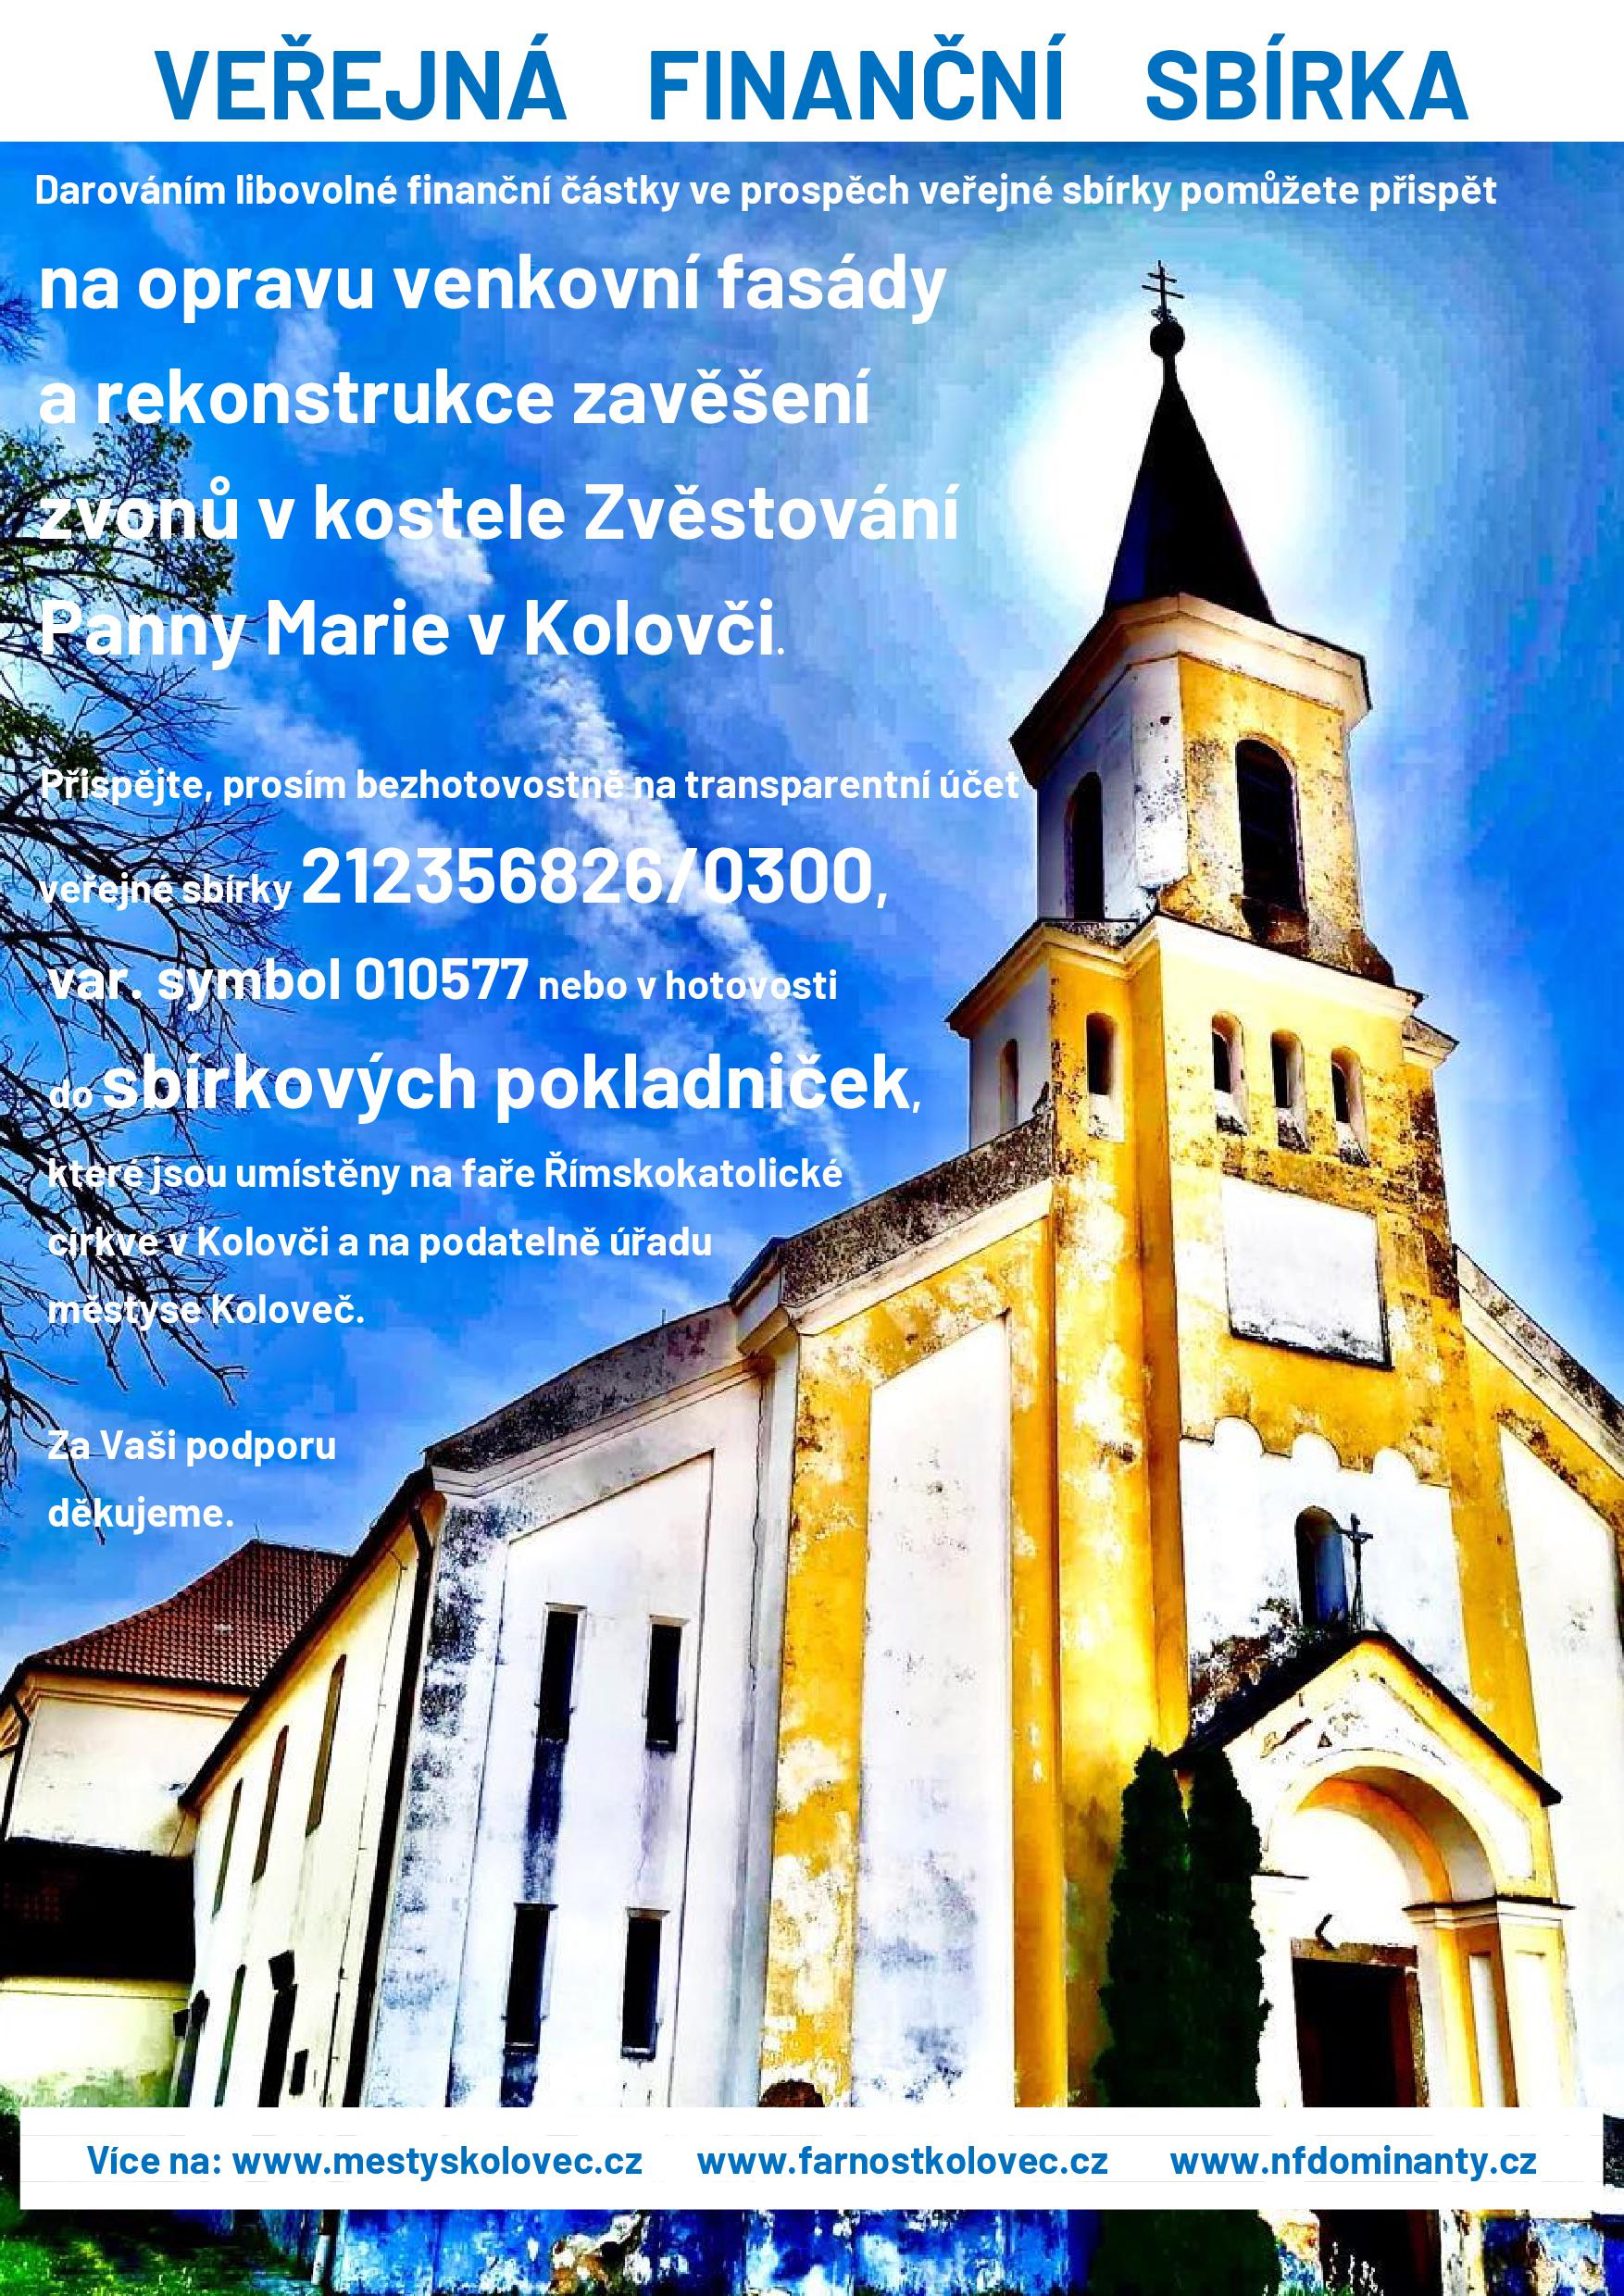 SB- ORIGINÁL VELIKOST PLAKÁTU-Veřejná finanční sbírka - plakát